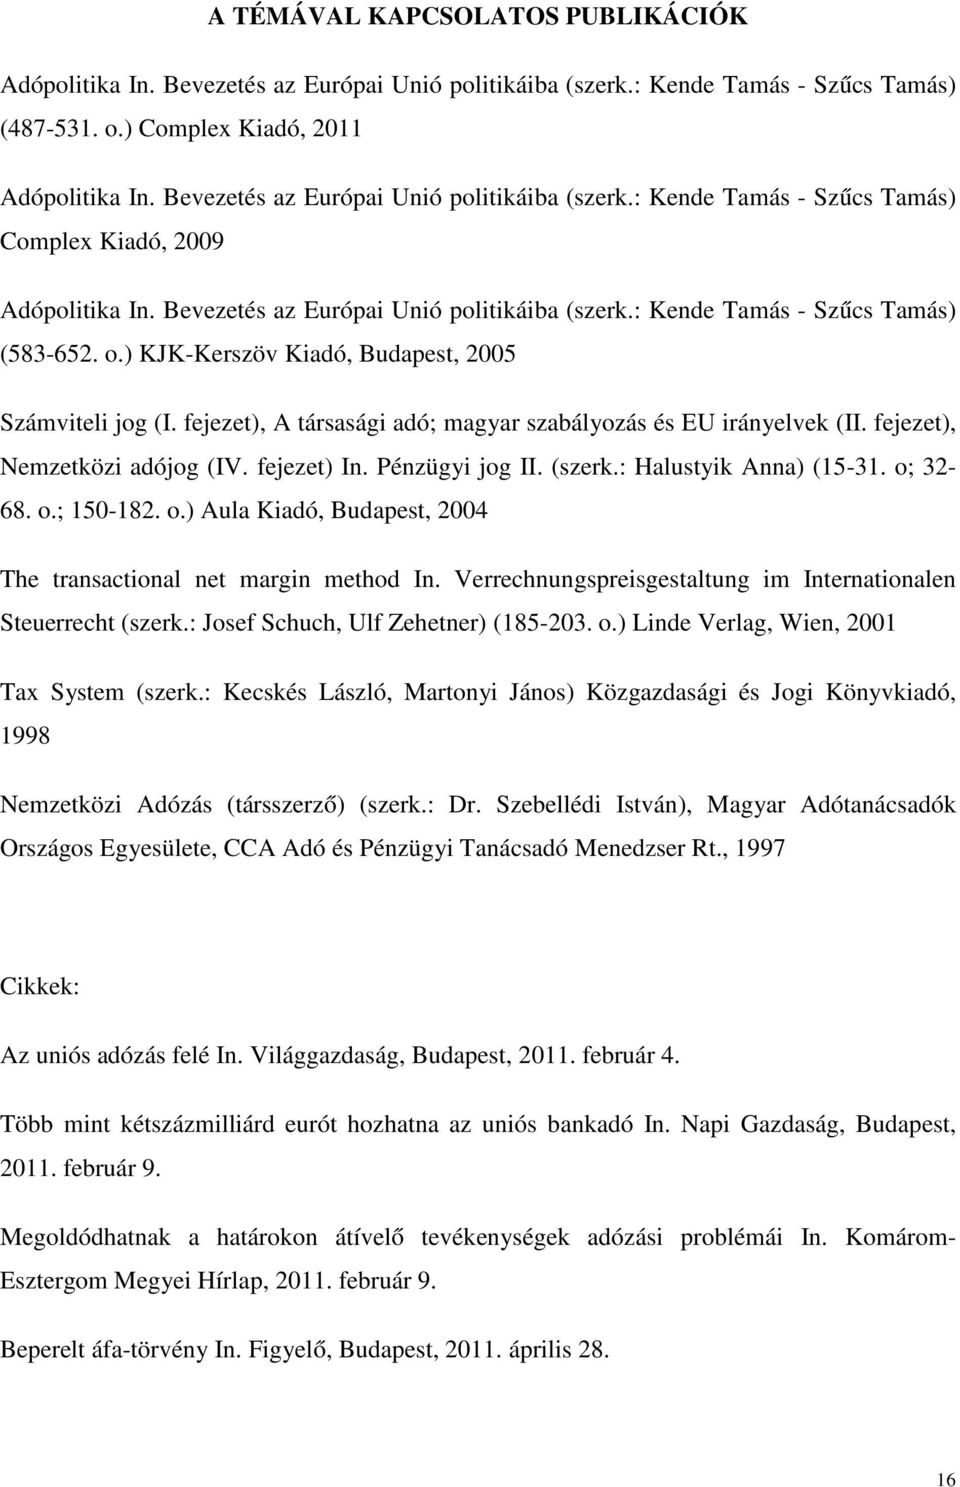 ) KJK-Kerszöv Kiadó, Budapest, 2005 Számviteli jog (I. fejezet), A társasági adó; magyar szabályozás és EU irányelvek (II. fejezet), Nemzetközi adójog (IV. fejezet) In. Pénzügyi jog II. (szerk.